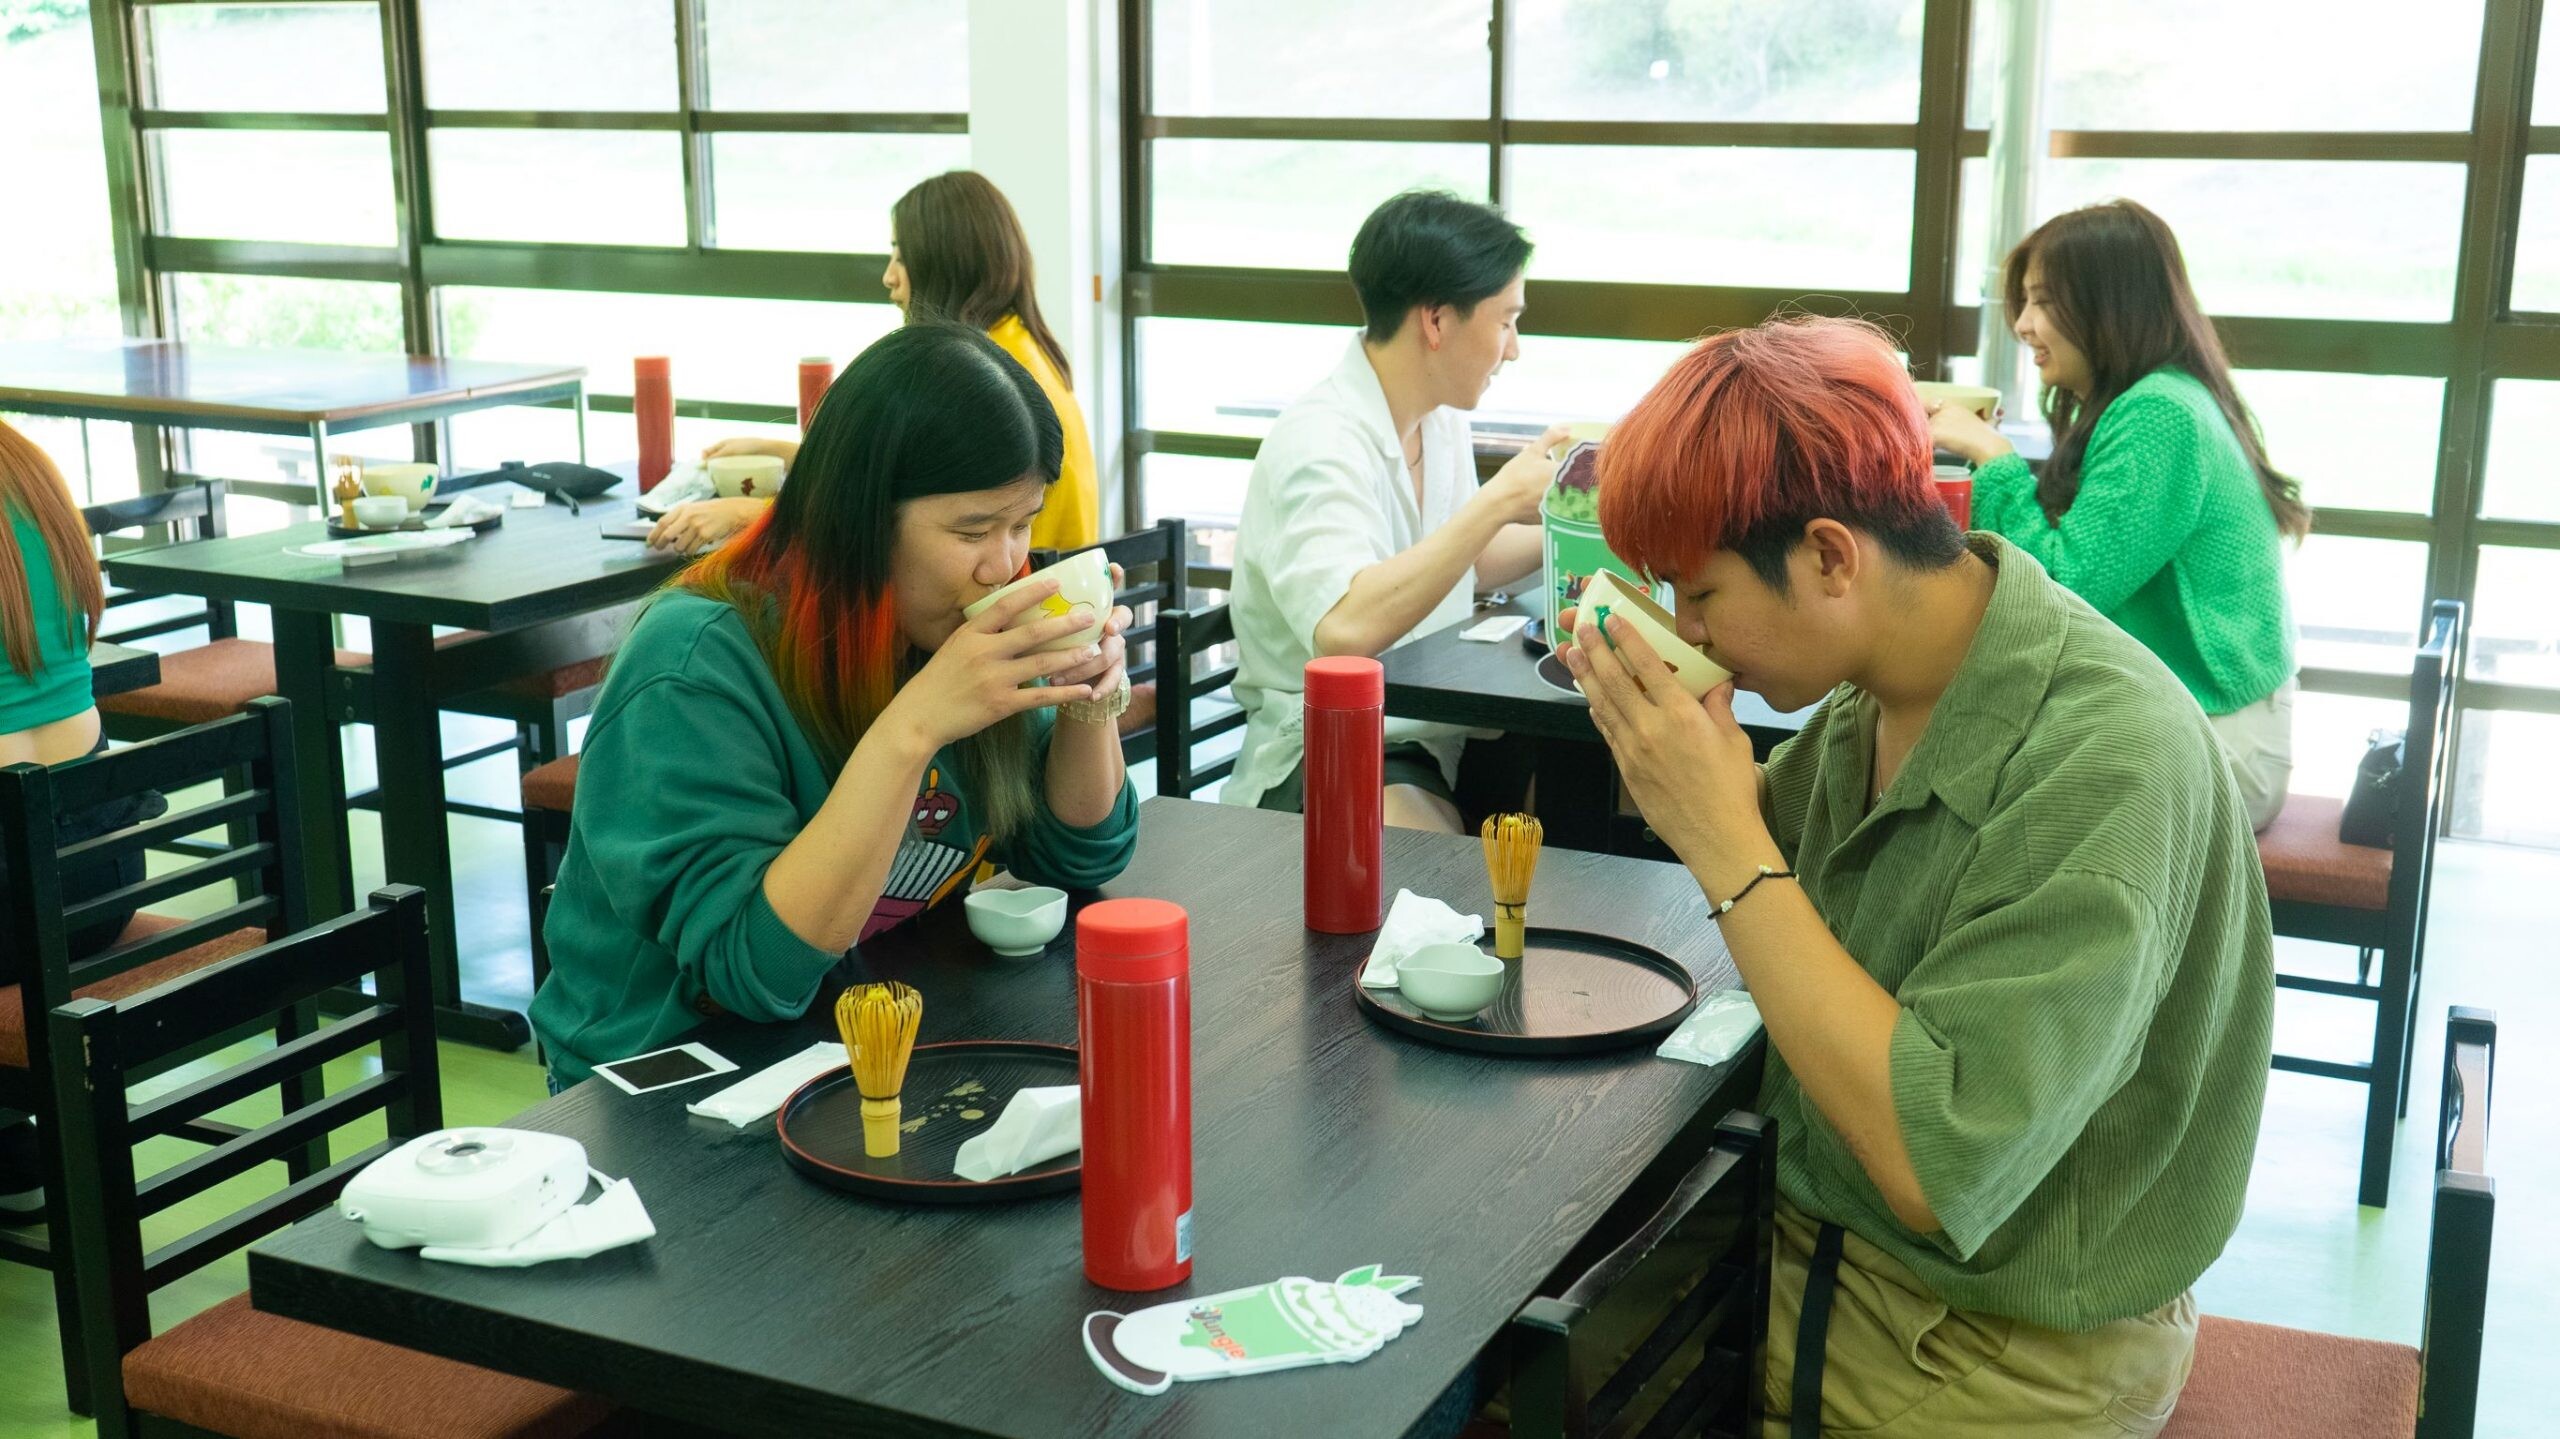 โลตัส ควงคู่วง SLAPKISS พาลูกค้า Jungle Cafe บิดลัดฟ้าไปญี่ปุ่น บุกแหล่งปลูกชาเขียวอูจิมัทชะสุดพรีเมียม ต้นกำเนิดชาเขียวอูจิที่ดีที่สุดในโลก